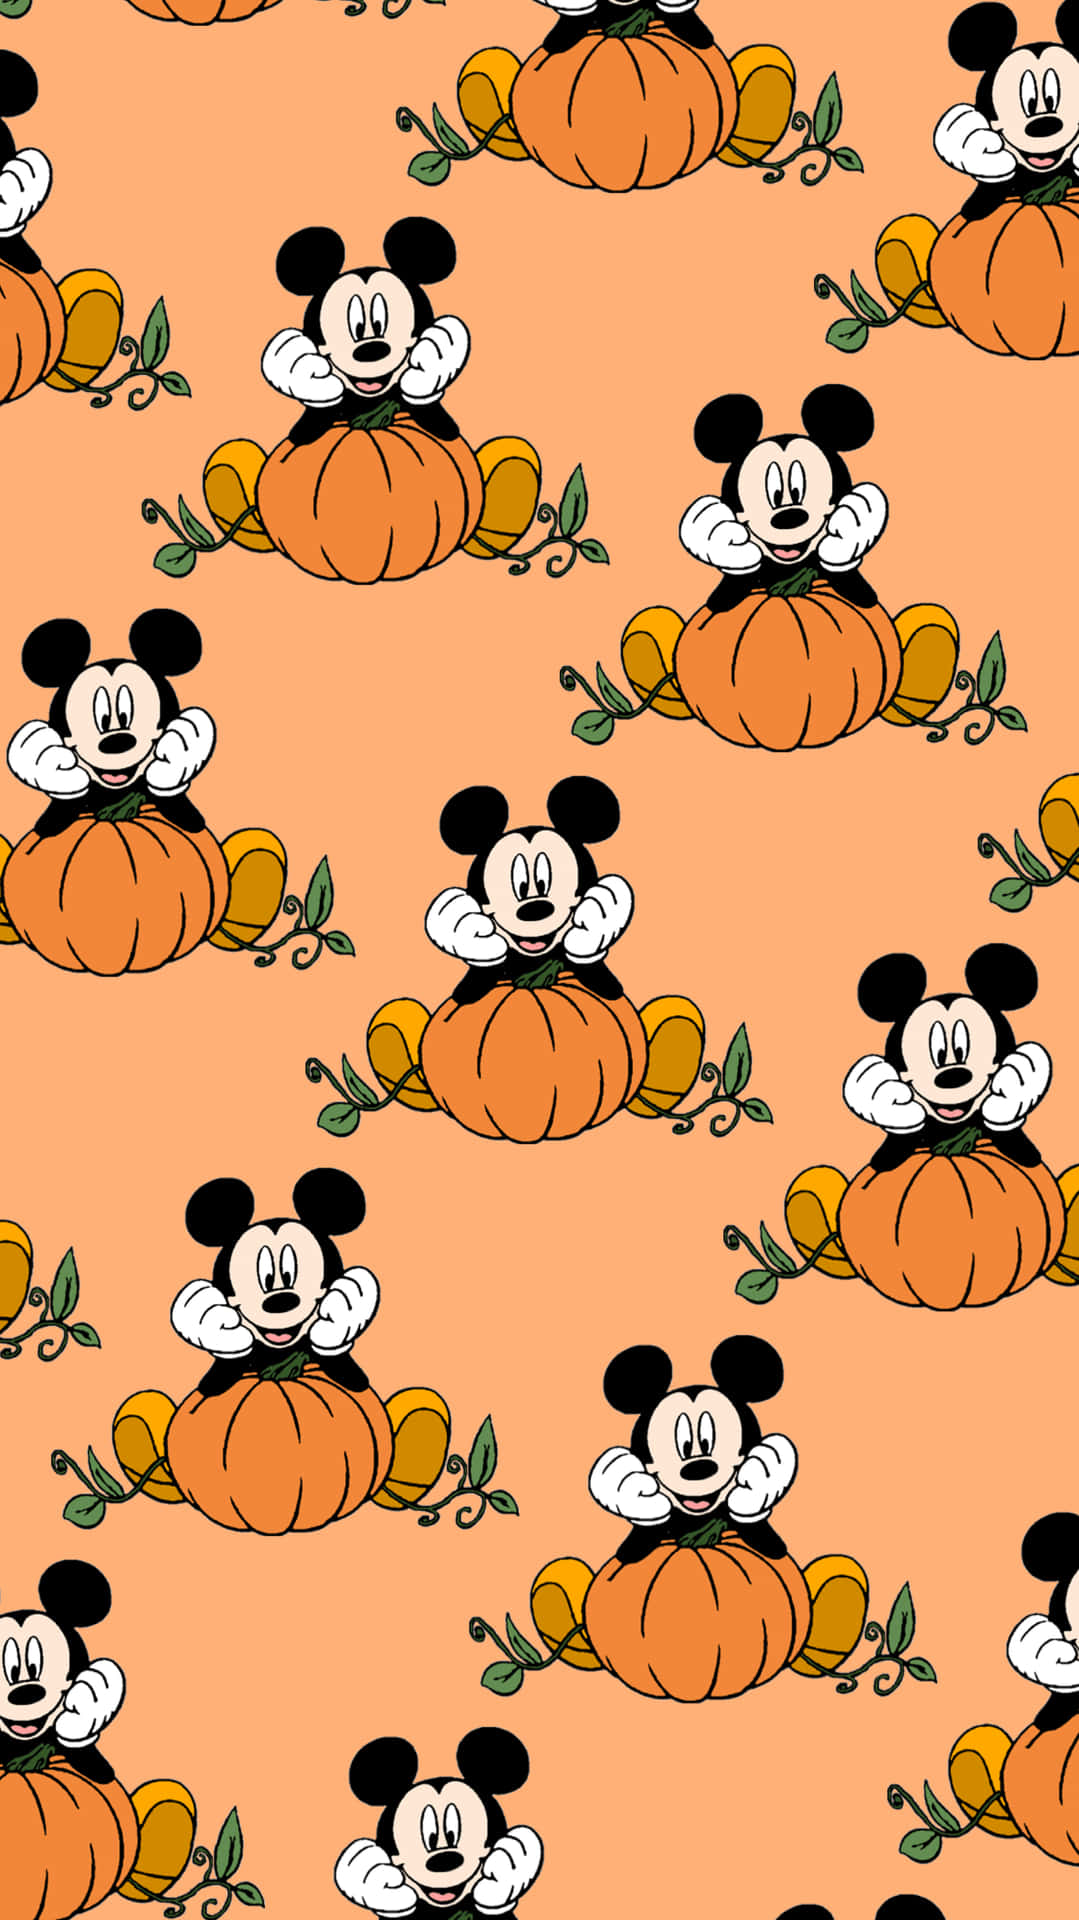 Imagende Halloween Con La Tierna Figura De Mickey Mouse Y Calabazas